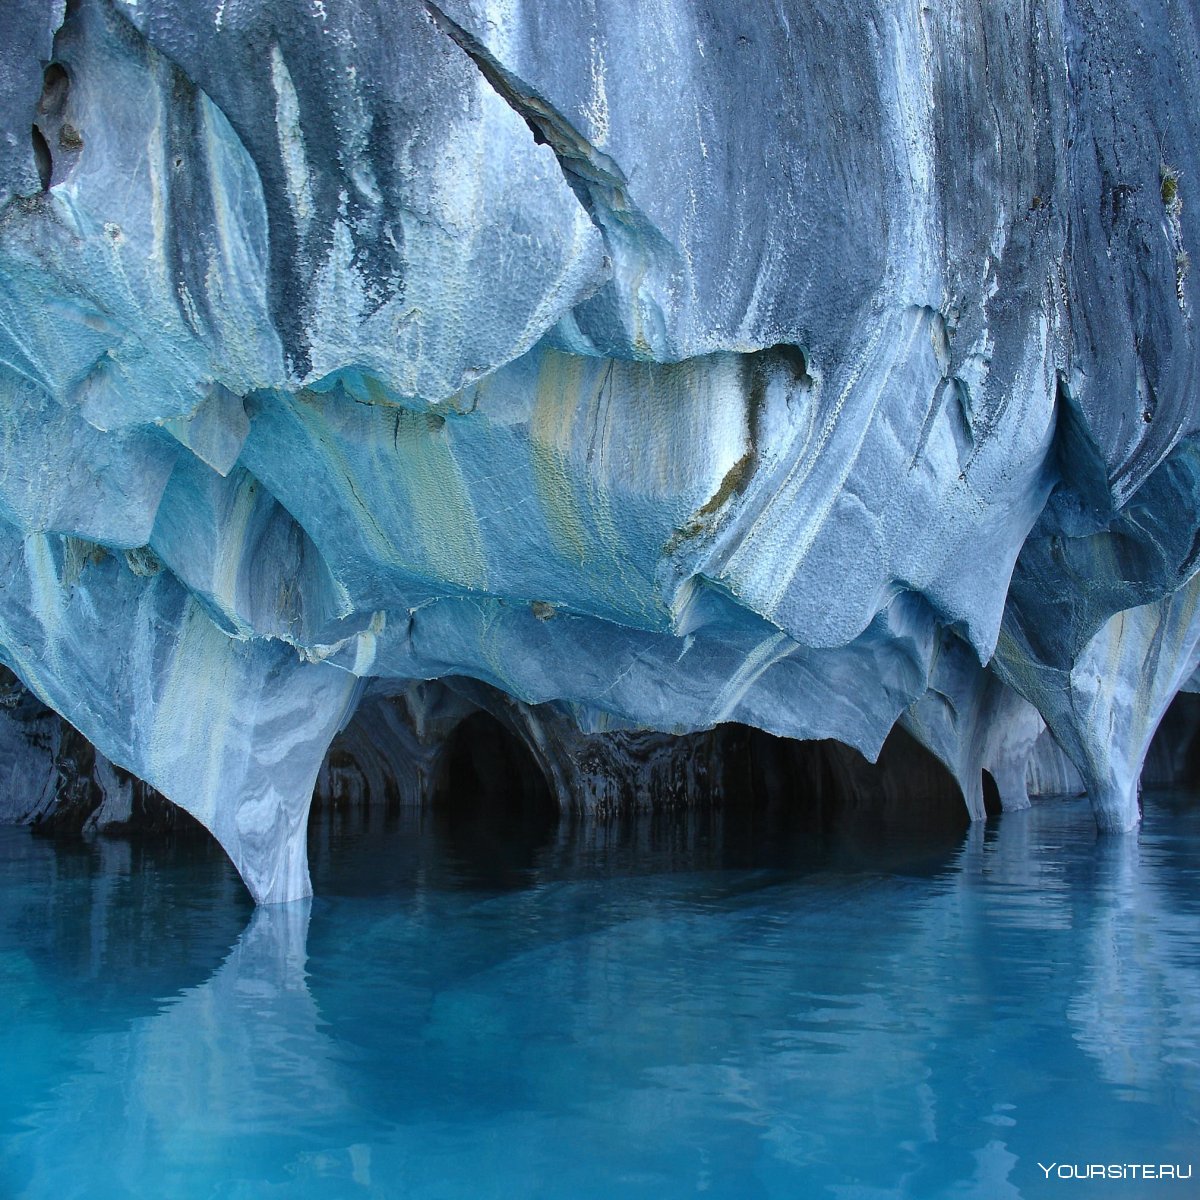 Мраморные пещеры Чиле-Чико, Чили